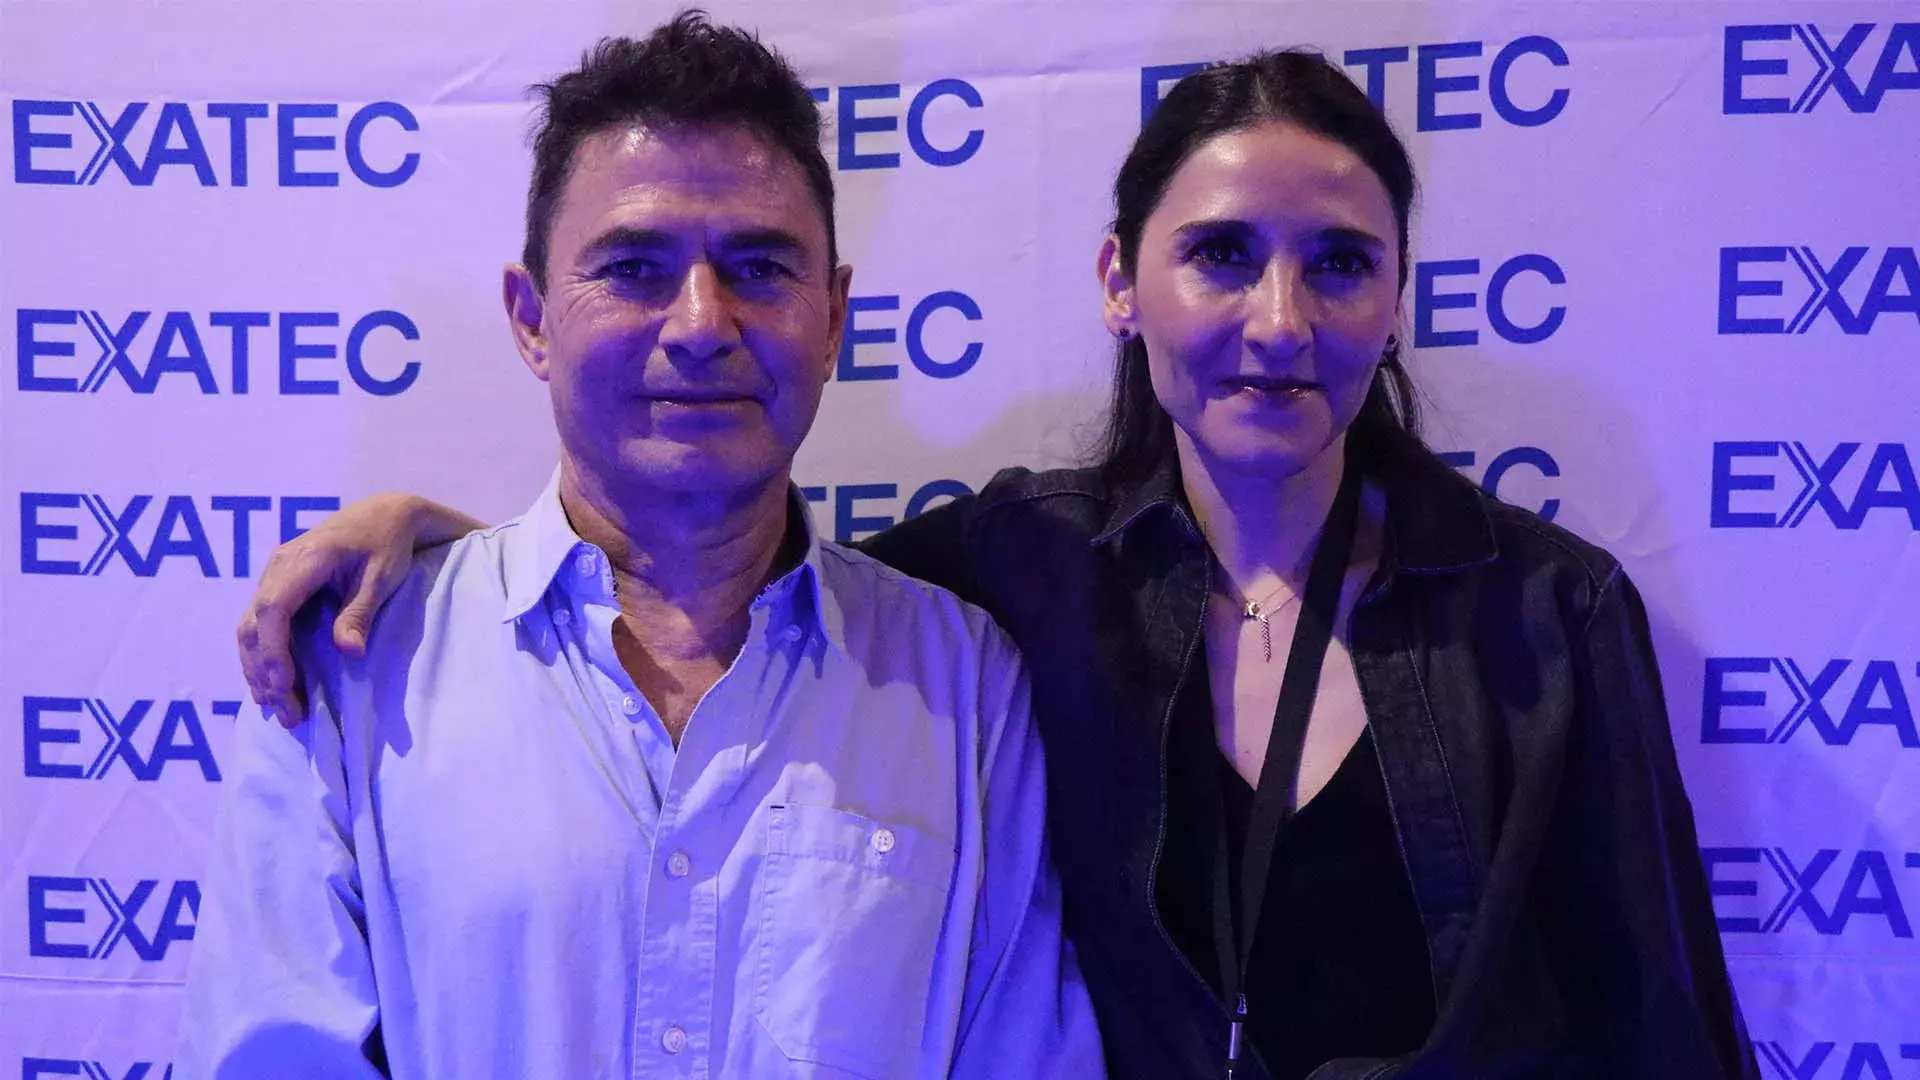 Productor Pablo Baksht y presidenta de la asociacion EXATEC